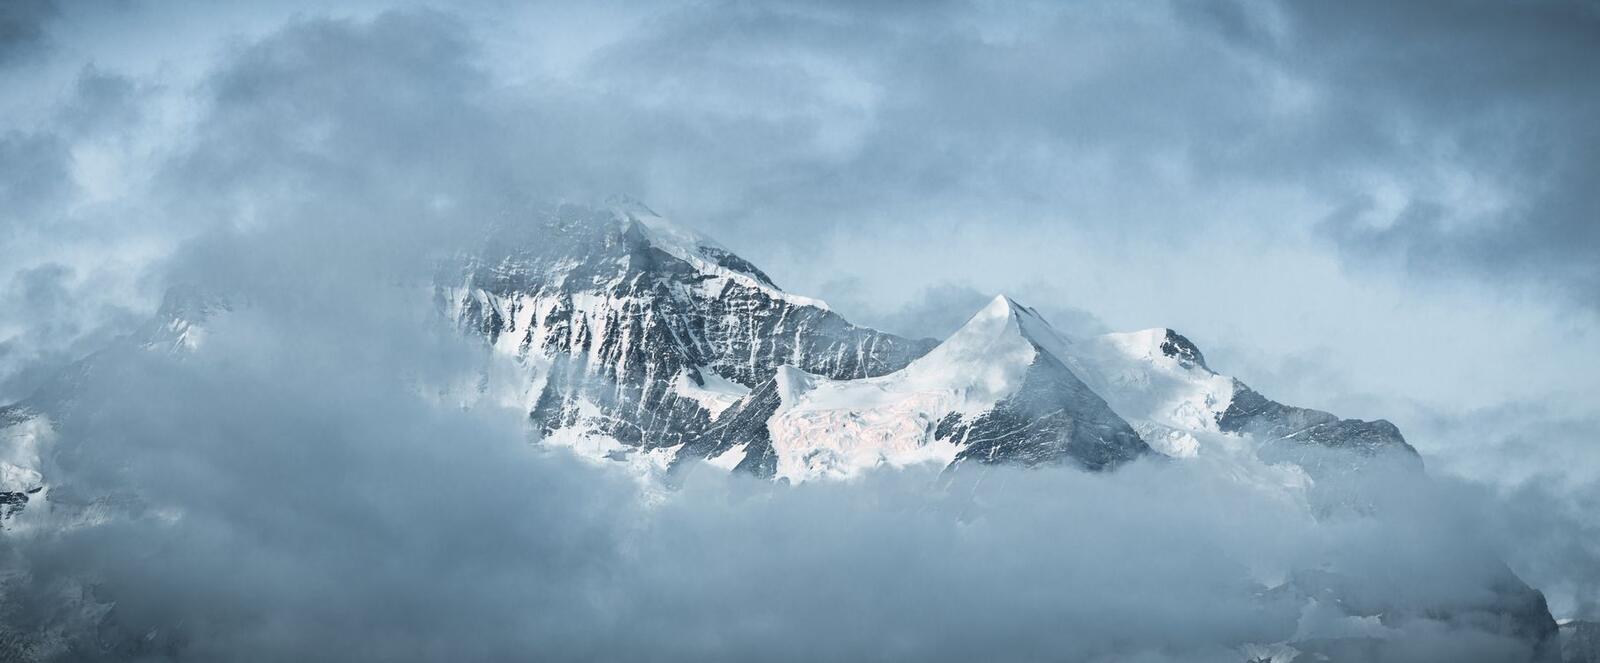 Бесплатное фото Горы в облаке